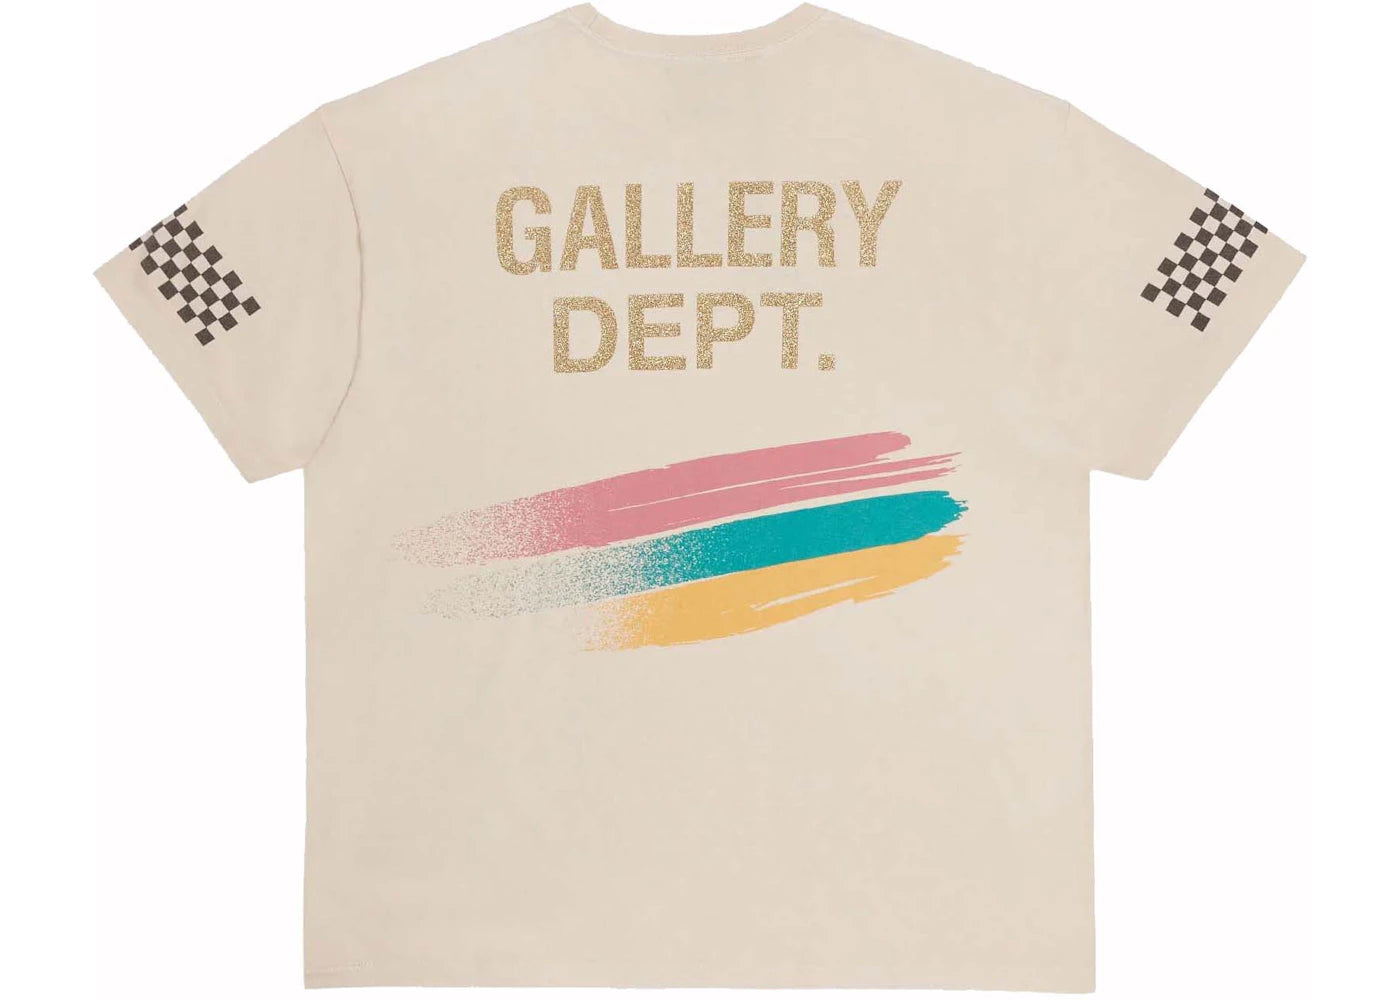 Gallery Dept. Miami Grand Prix Formula 1 Merch T-Shirt Archival White